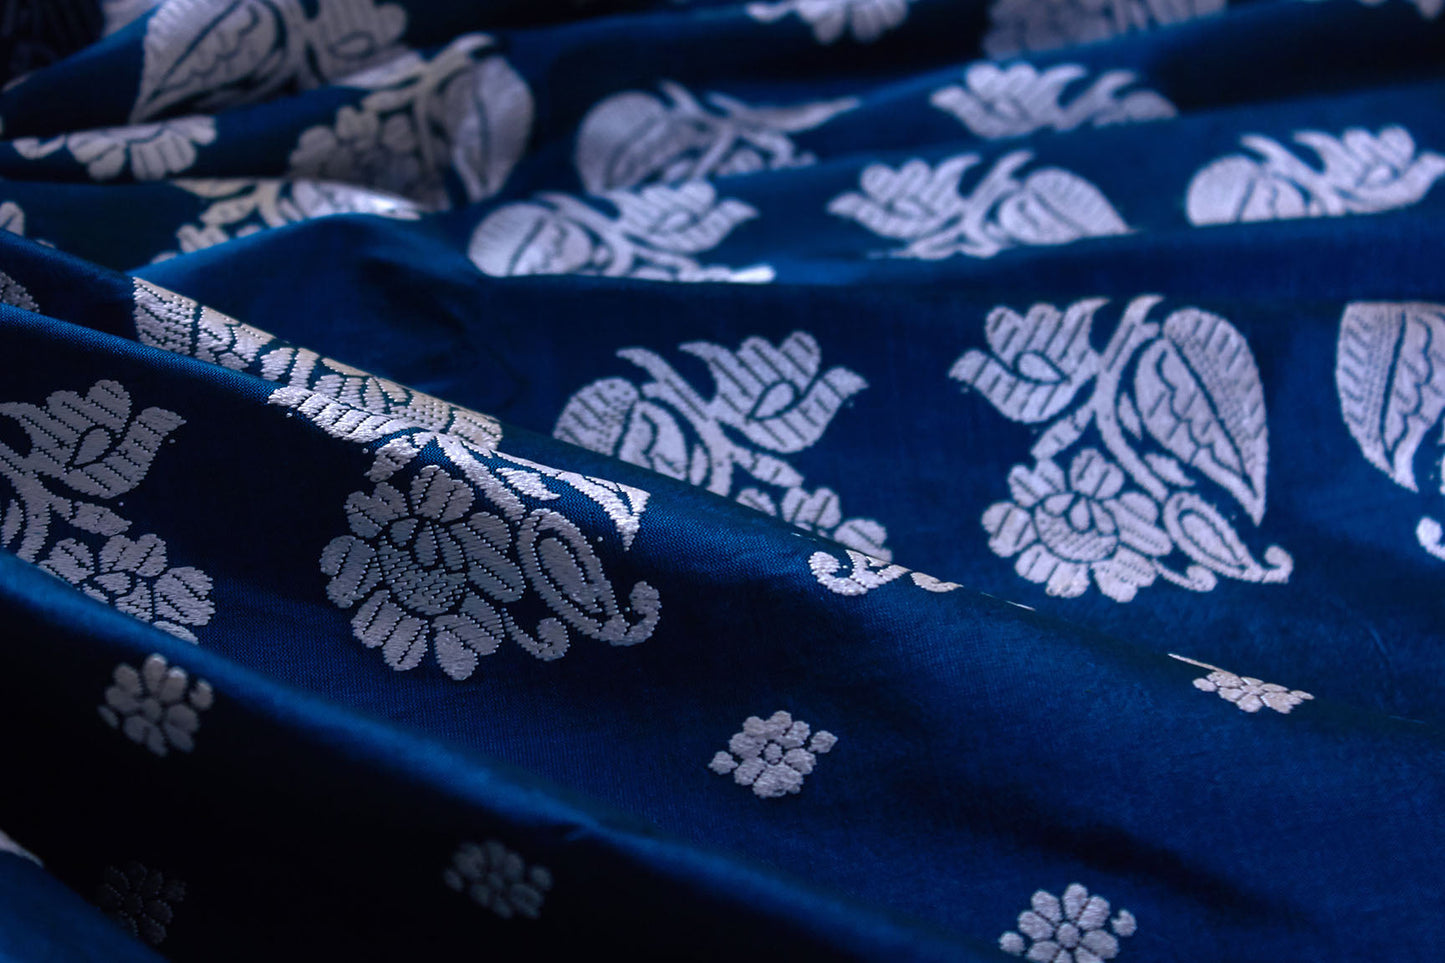 Indigo Natural Dyed Mulberry Silk Sari (Made to order)